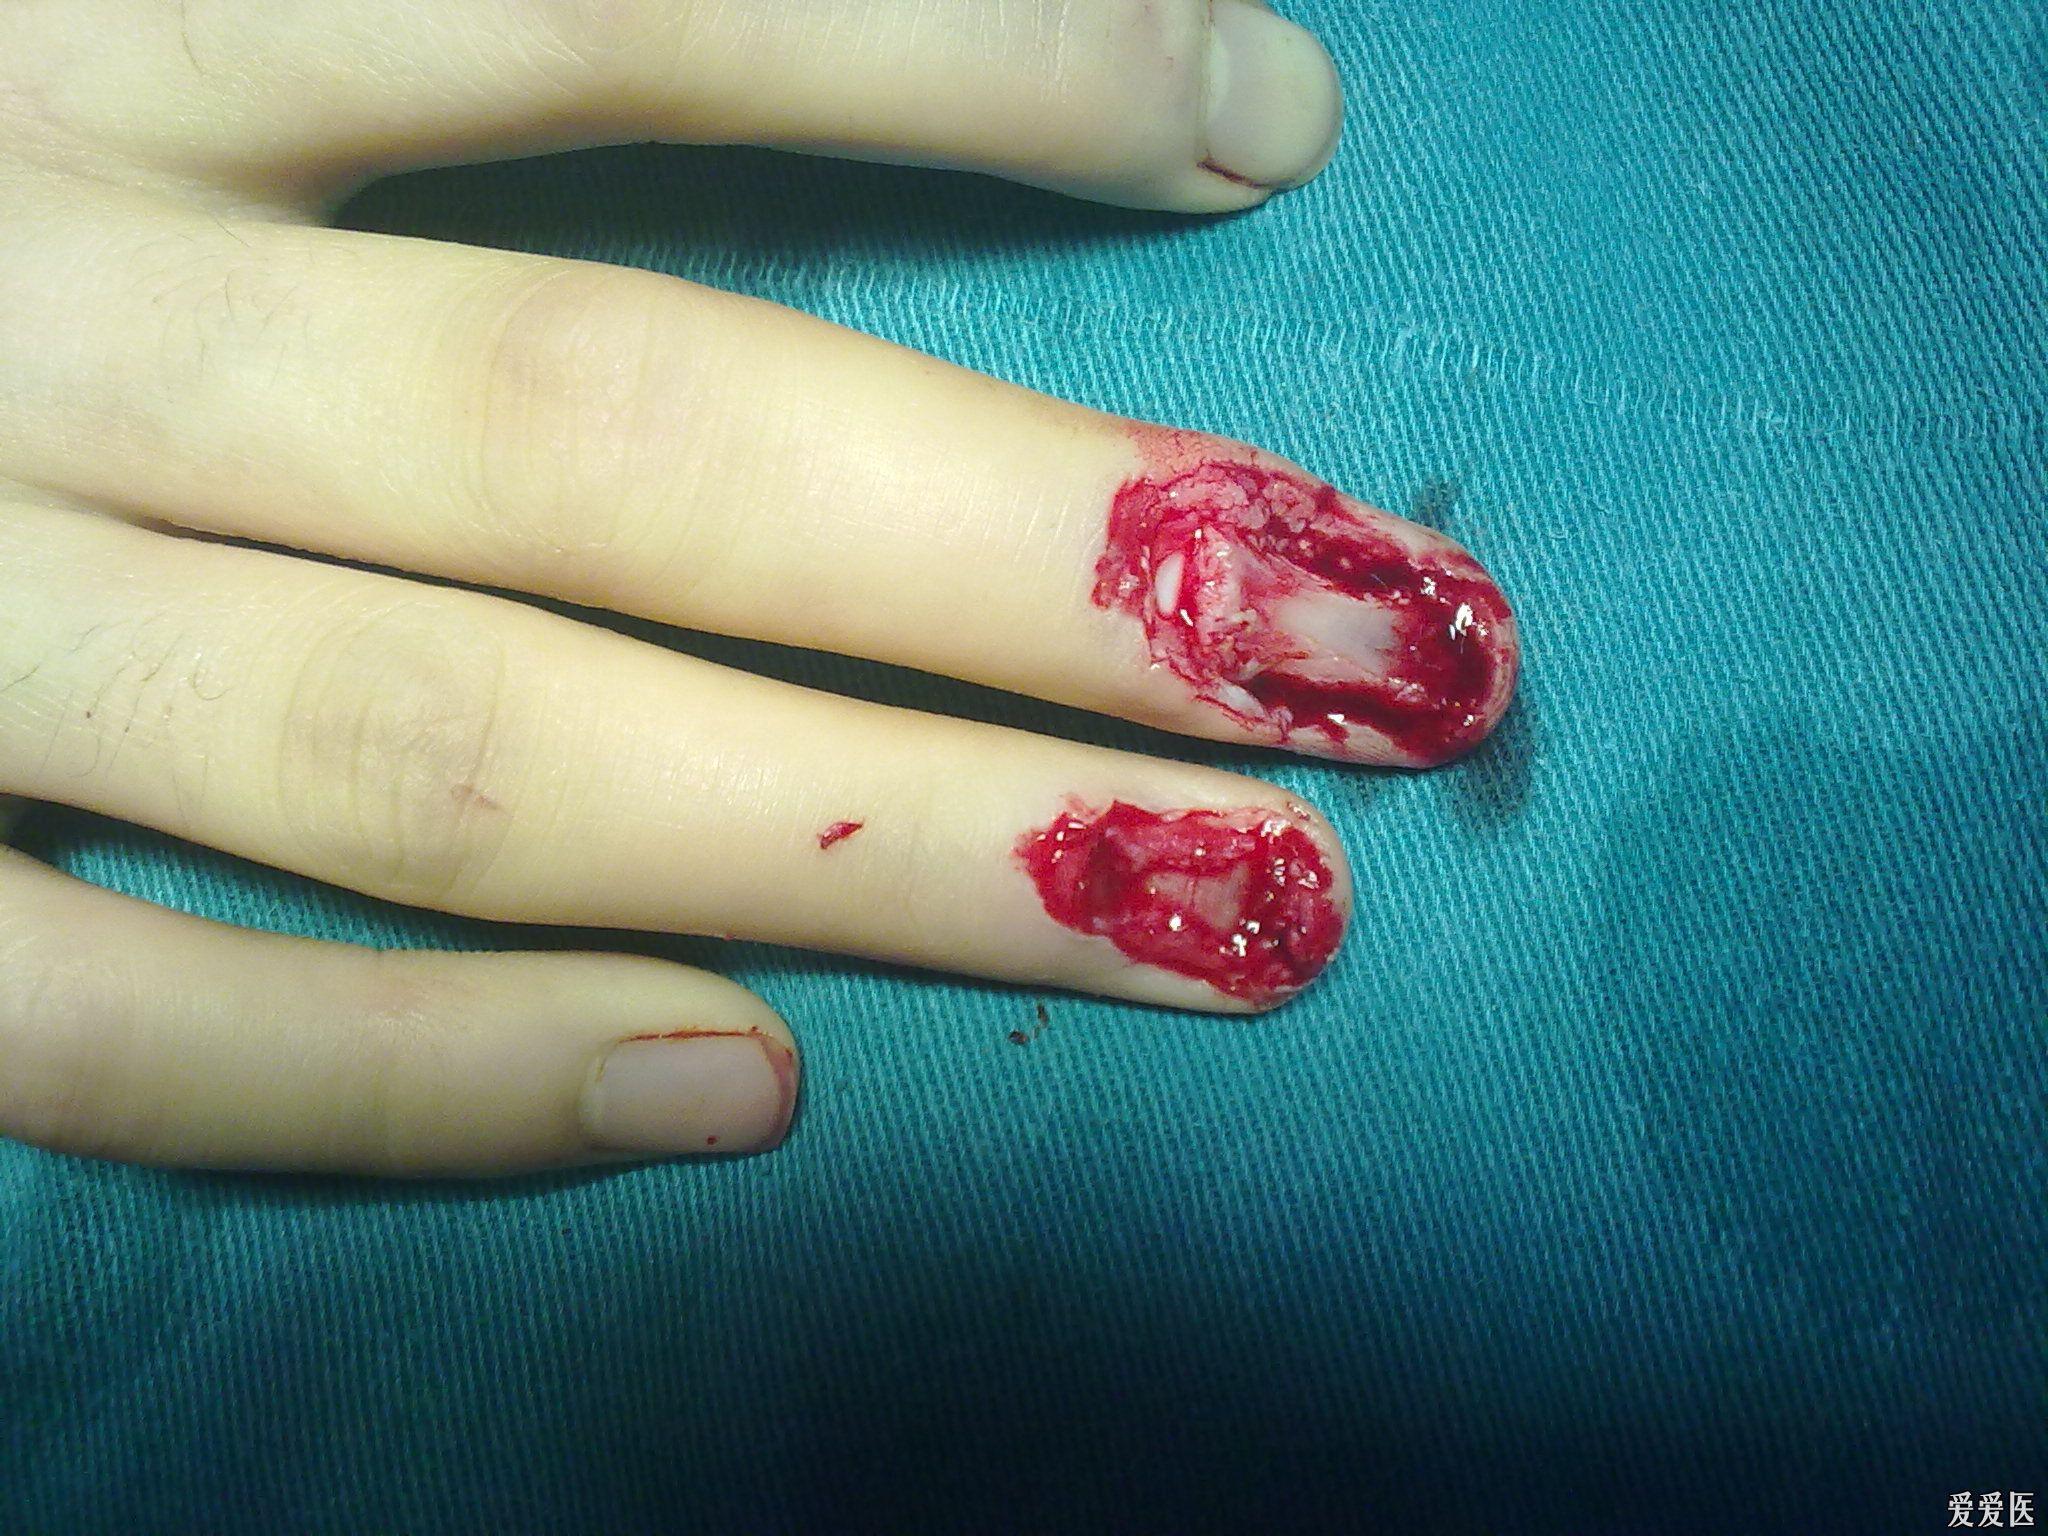 手指创面           患者中环指机器磨压伤致中指远指间关节背侧皮肤